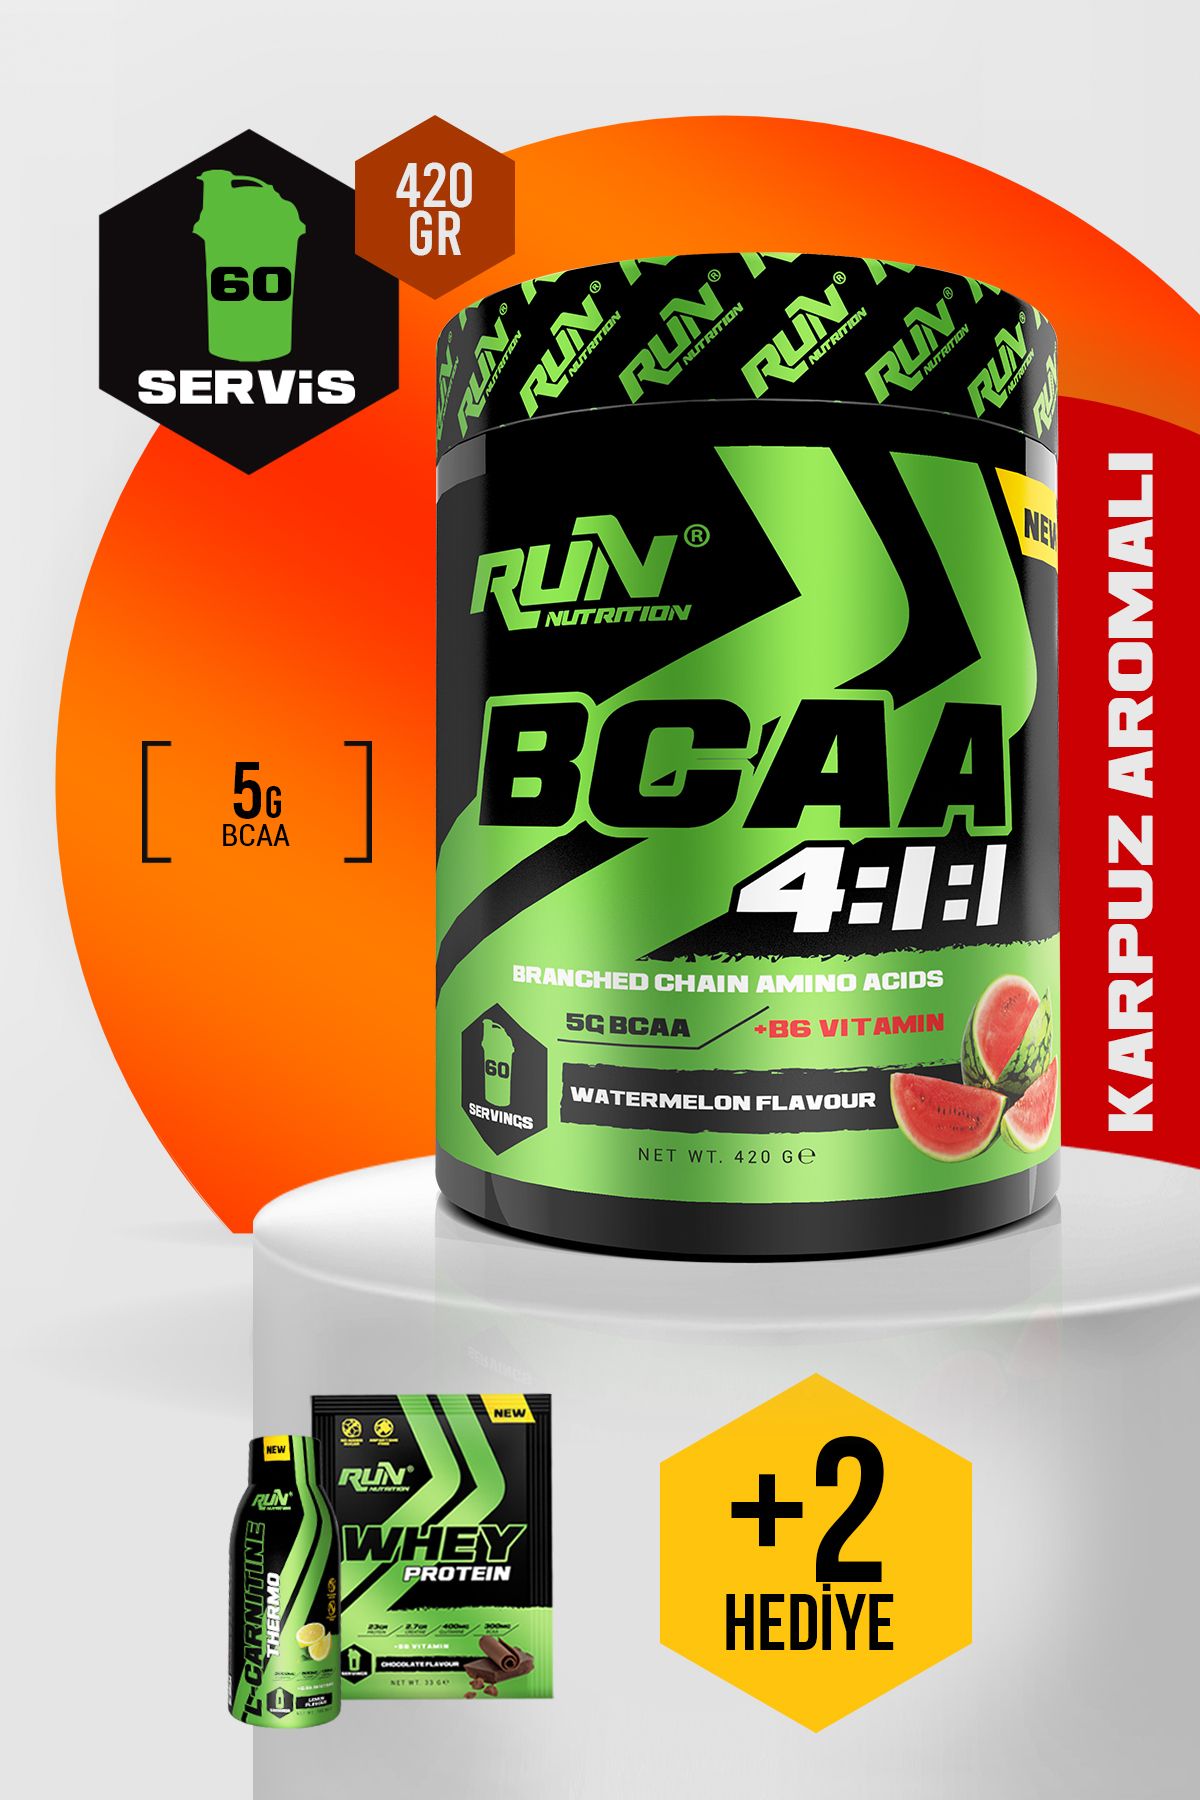 Run Nutrition Bcaa 4.1.1 - Karpuz Aromalı - 420 gr - 60 Servis - Hediyeli